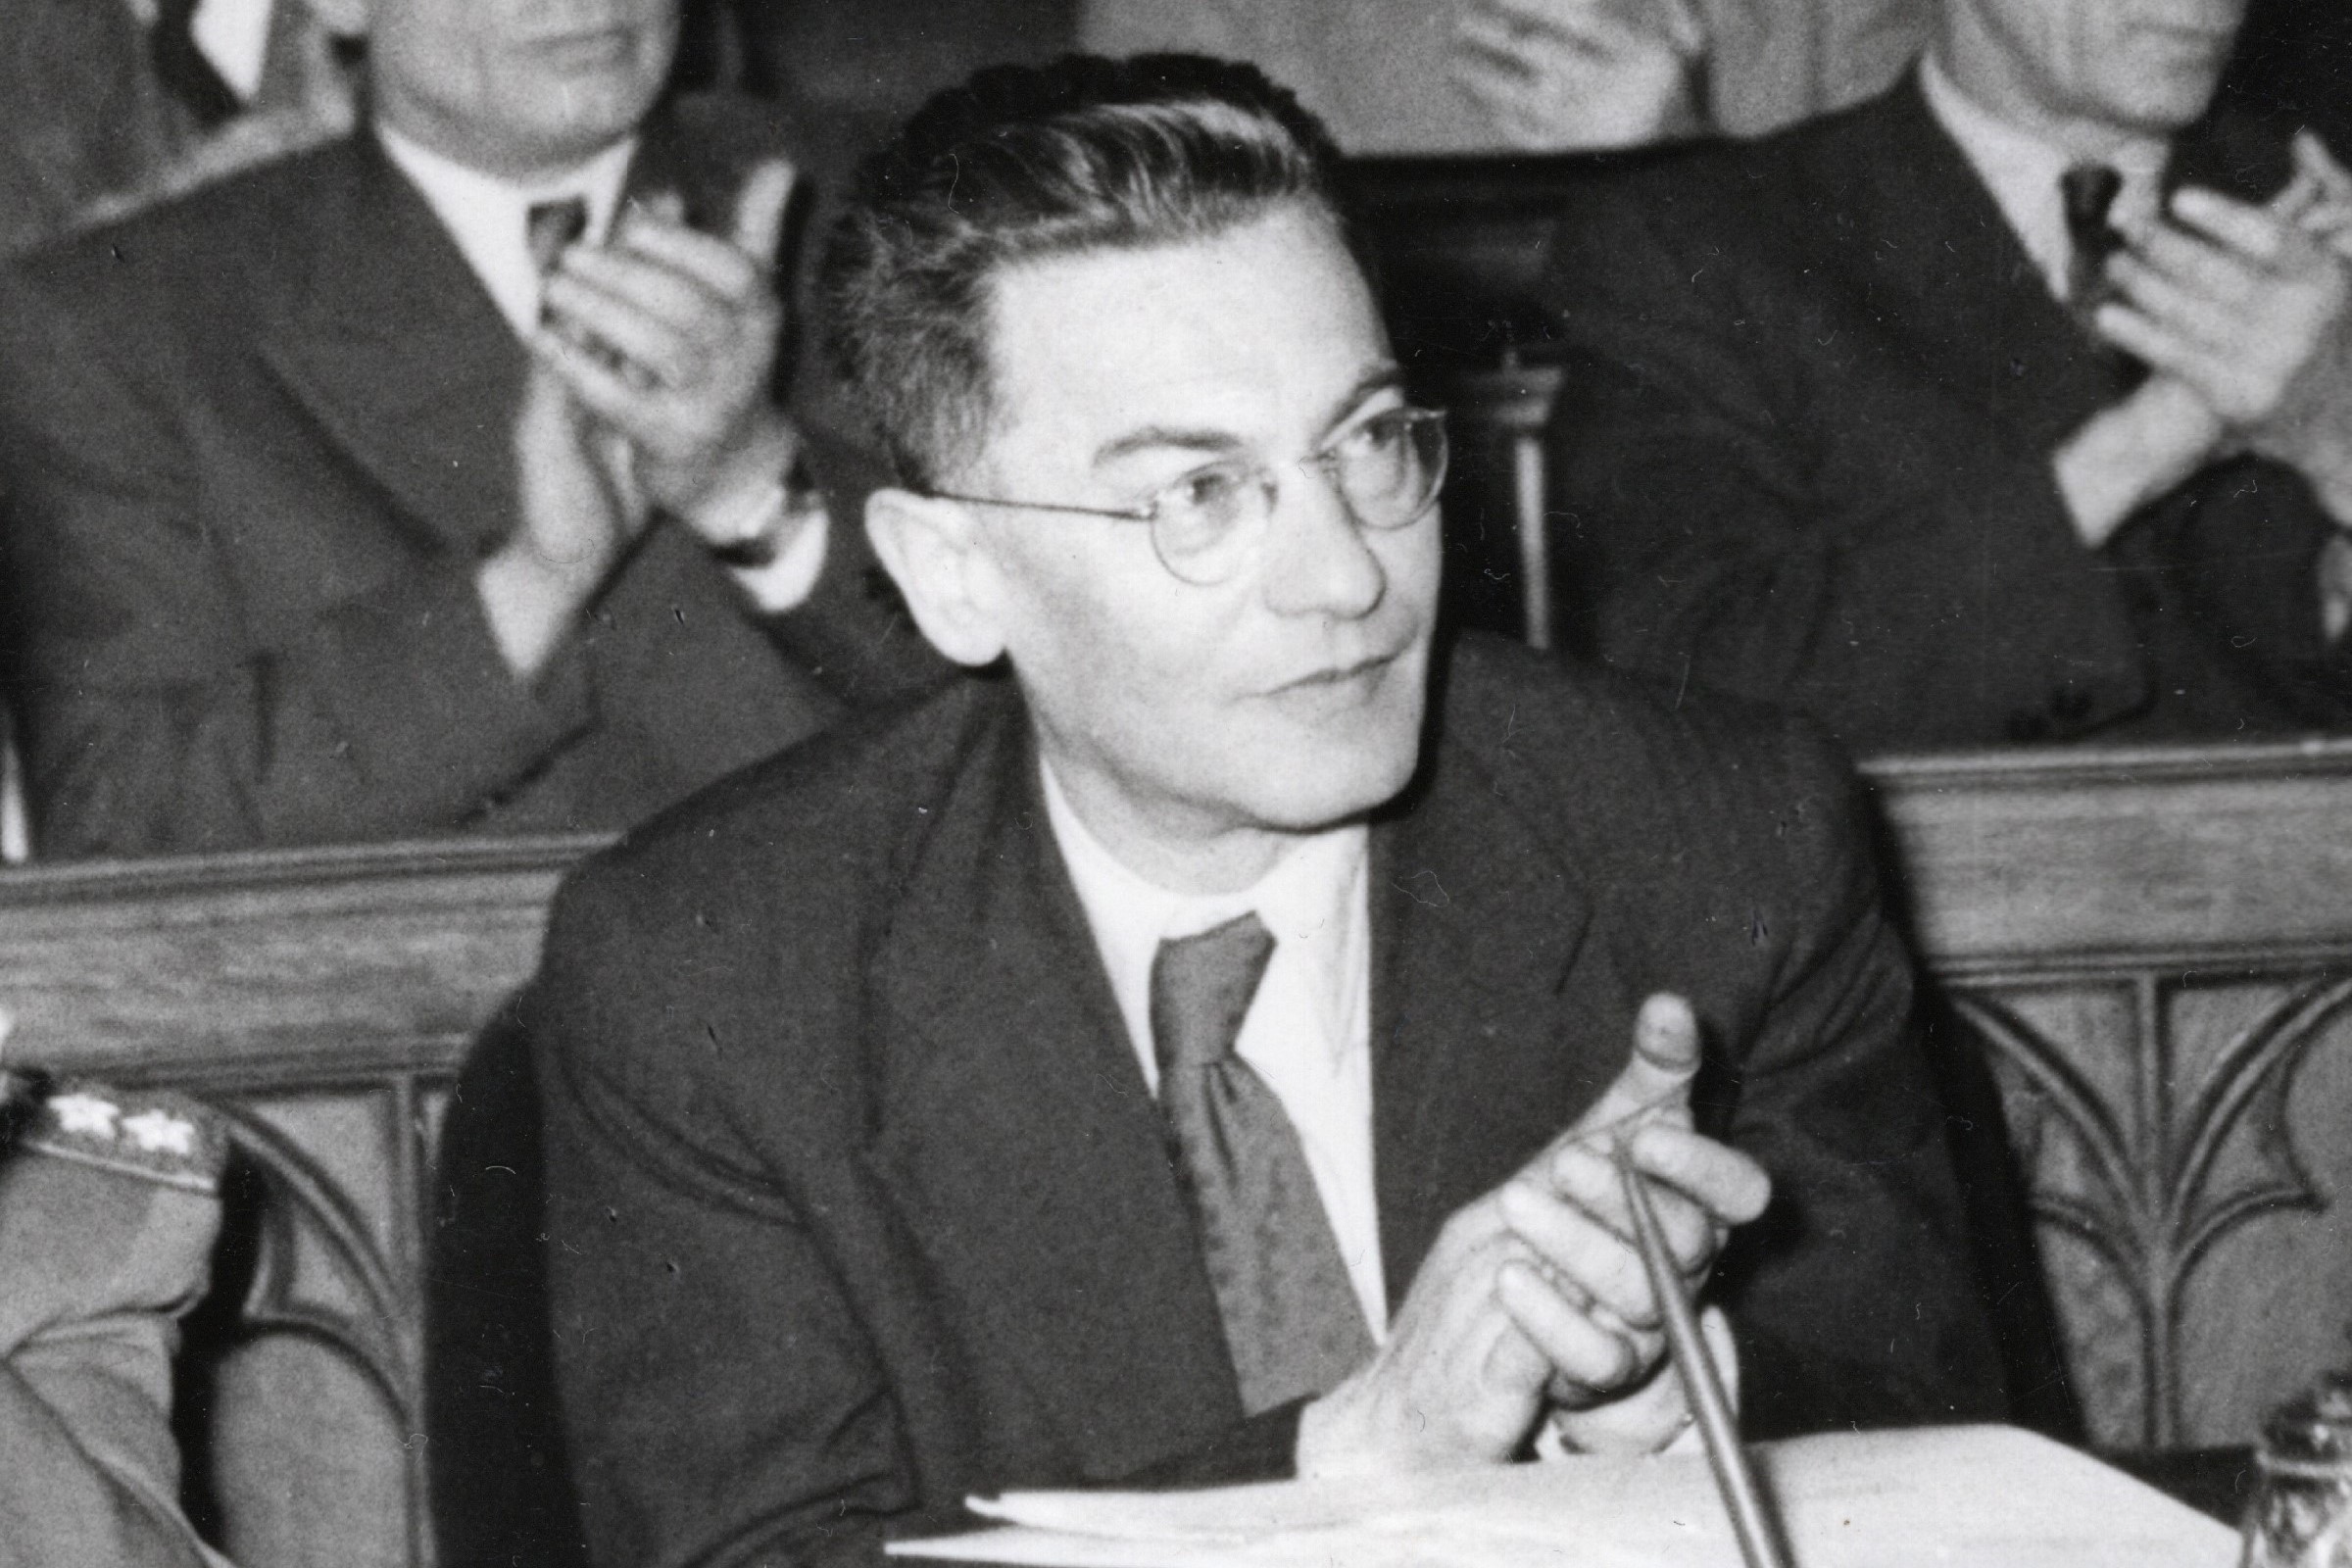 Révai József 1950-ben a Parlamentben. Képkivágás. A teljes fotót lásd lejjebb. forrása: Fortepan / Bauer Sándor